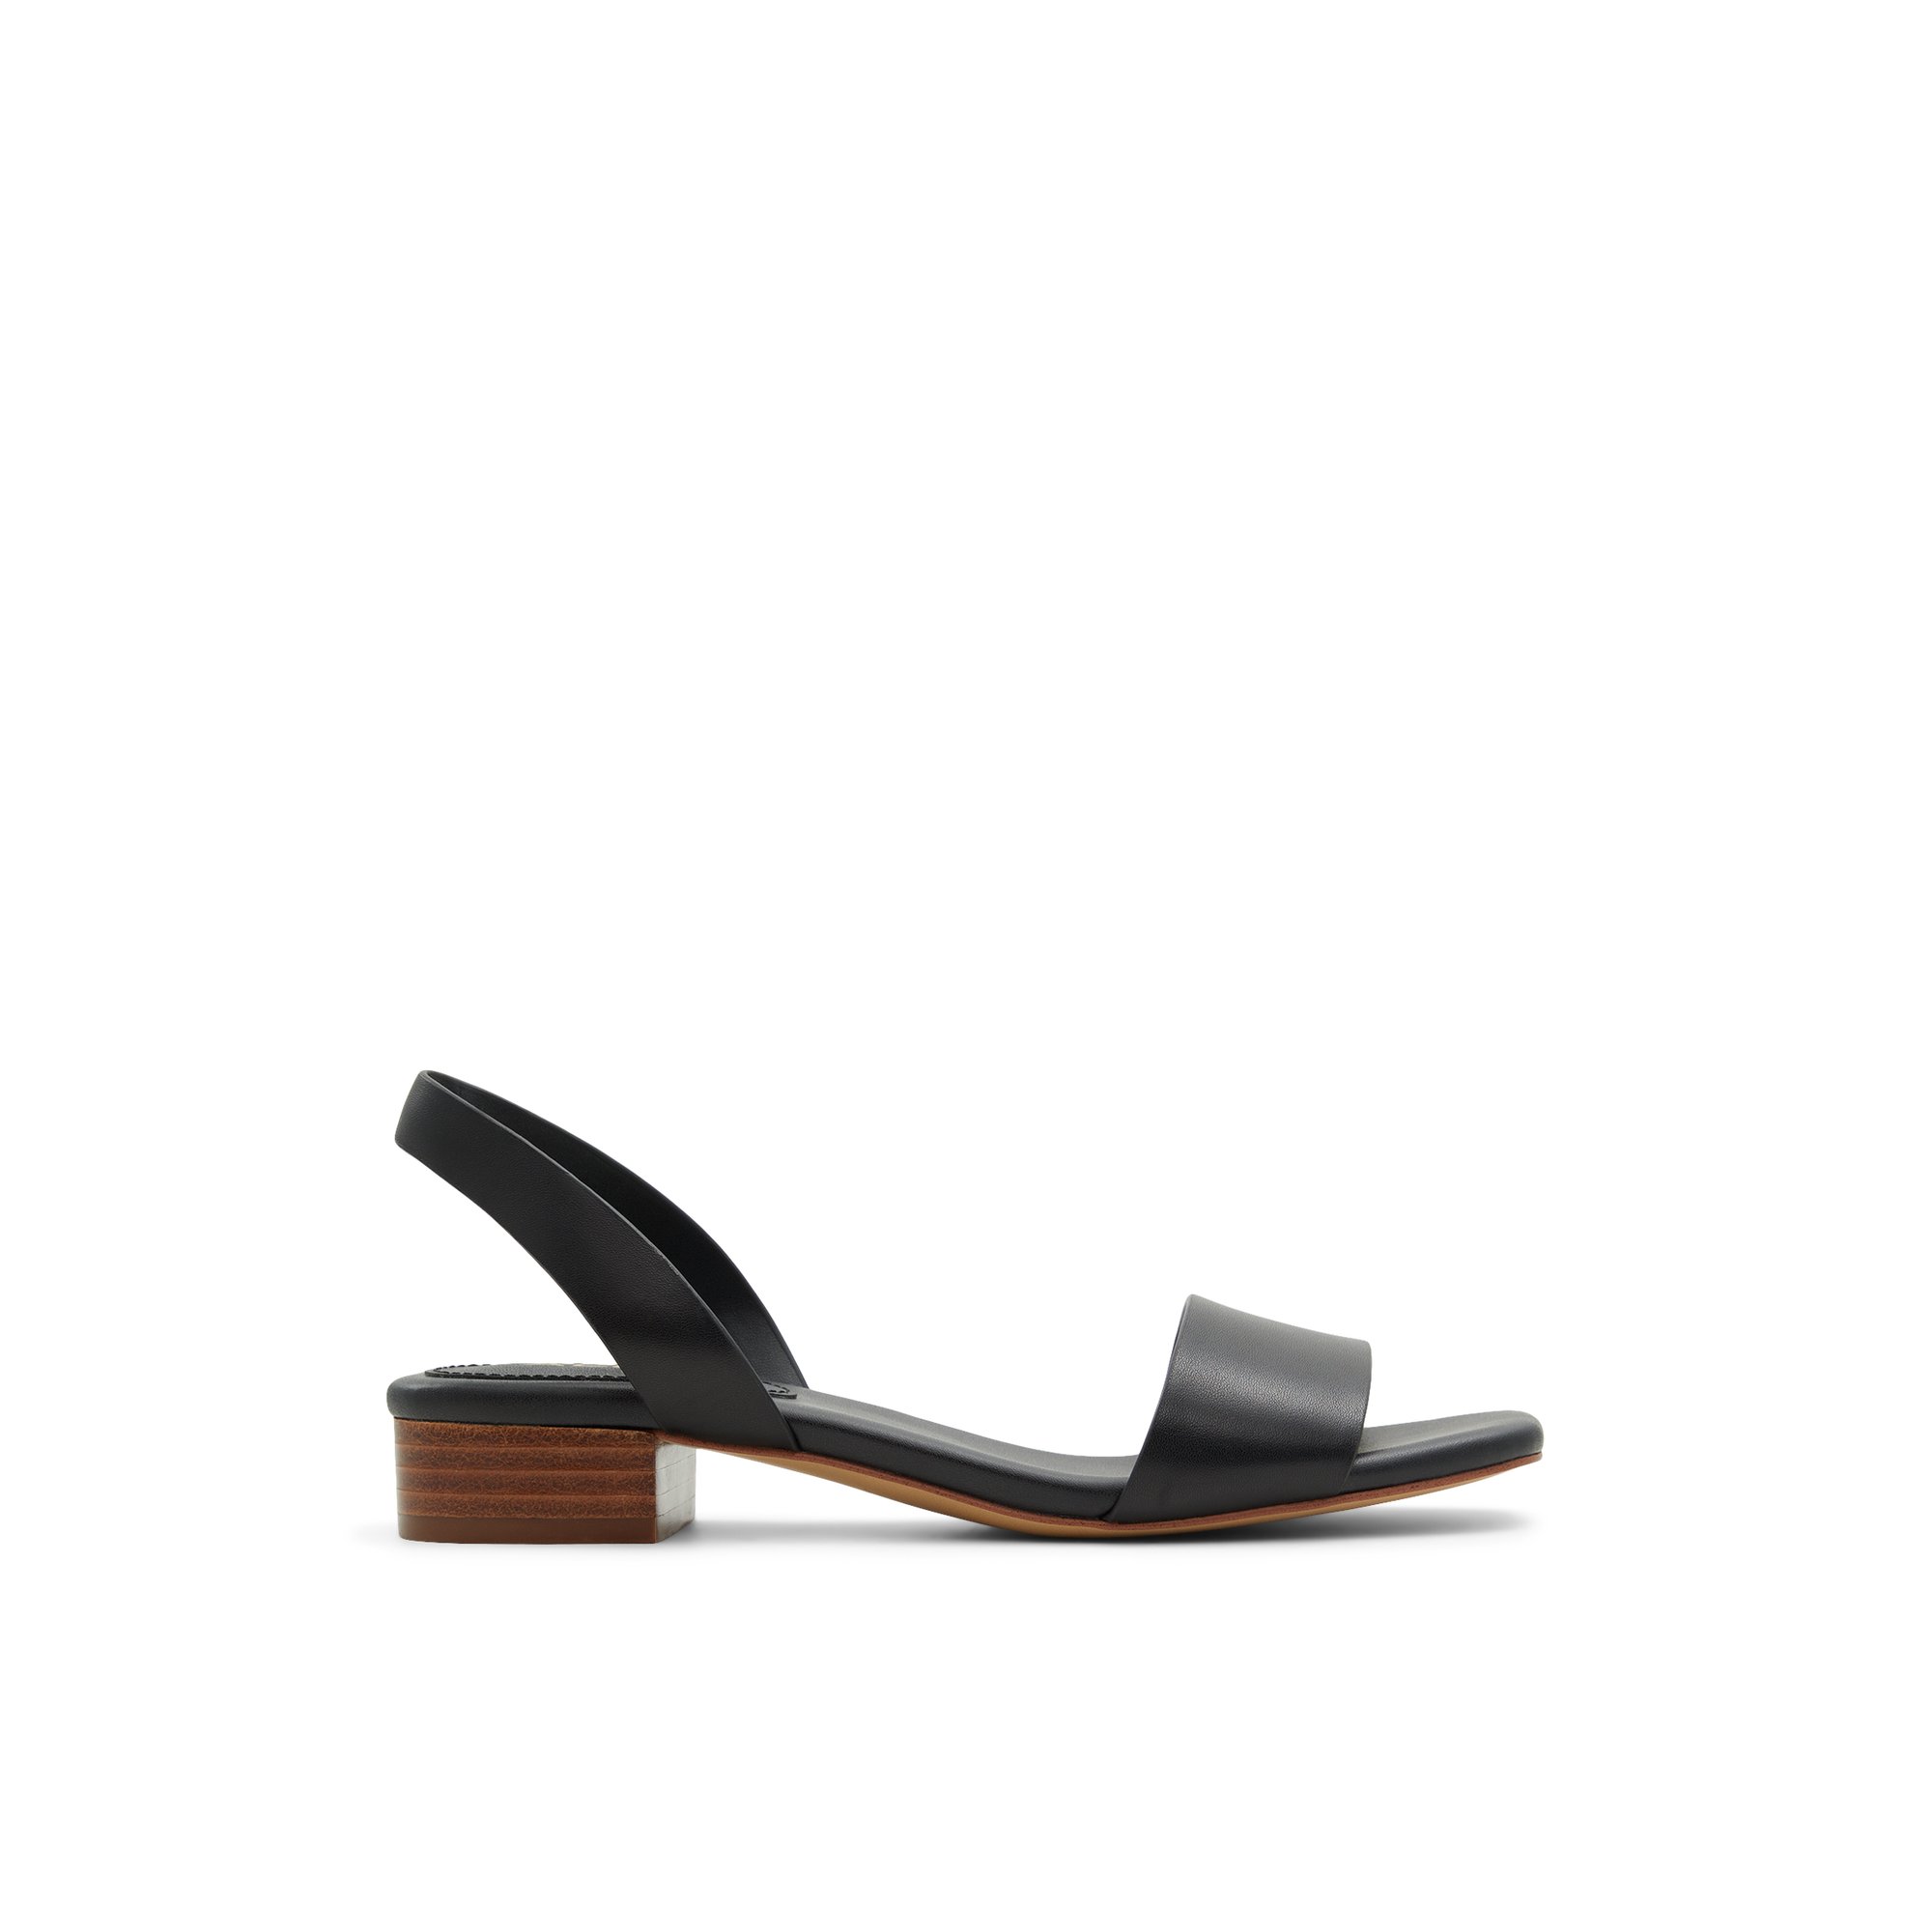 ALDO Dorenna - Women's Sandals Heeled - Black